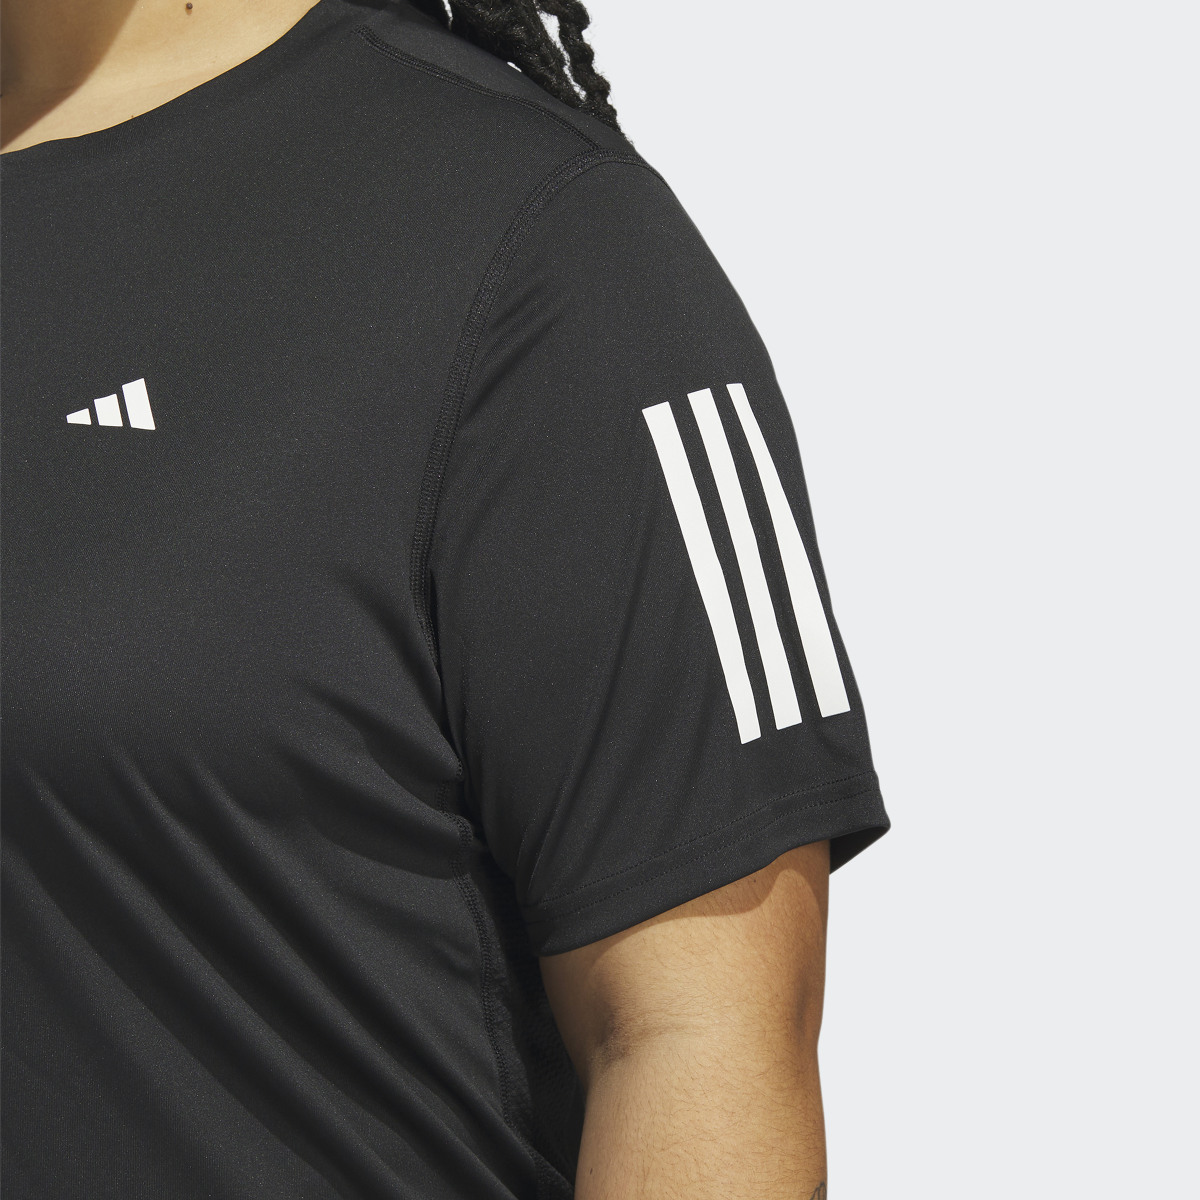 Adidas Koszulka Own the Run (Plus Size). 6